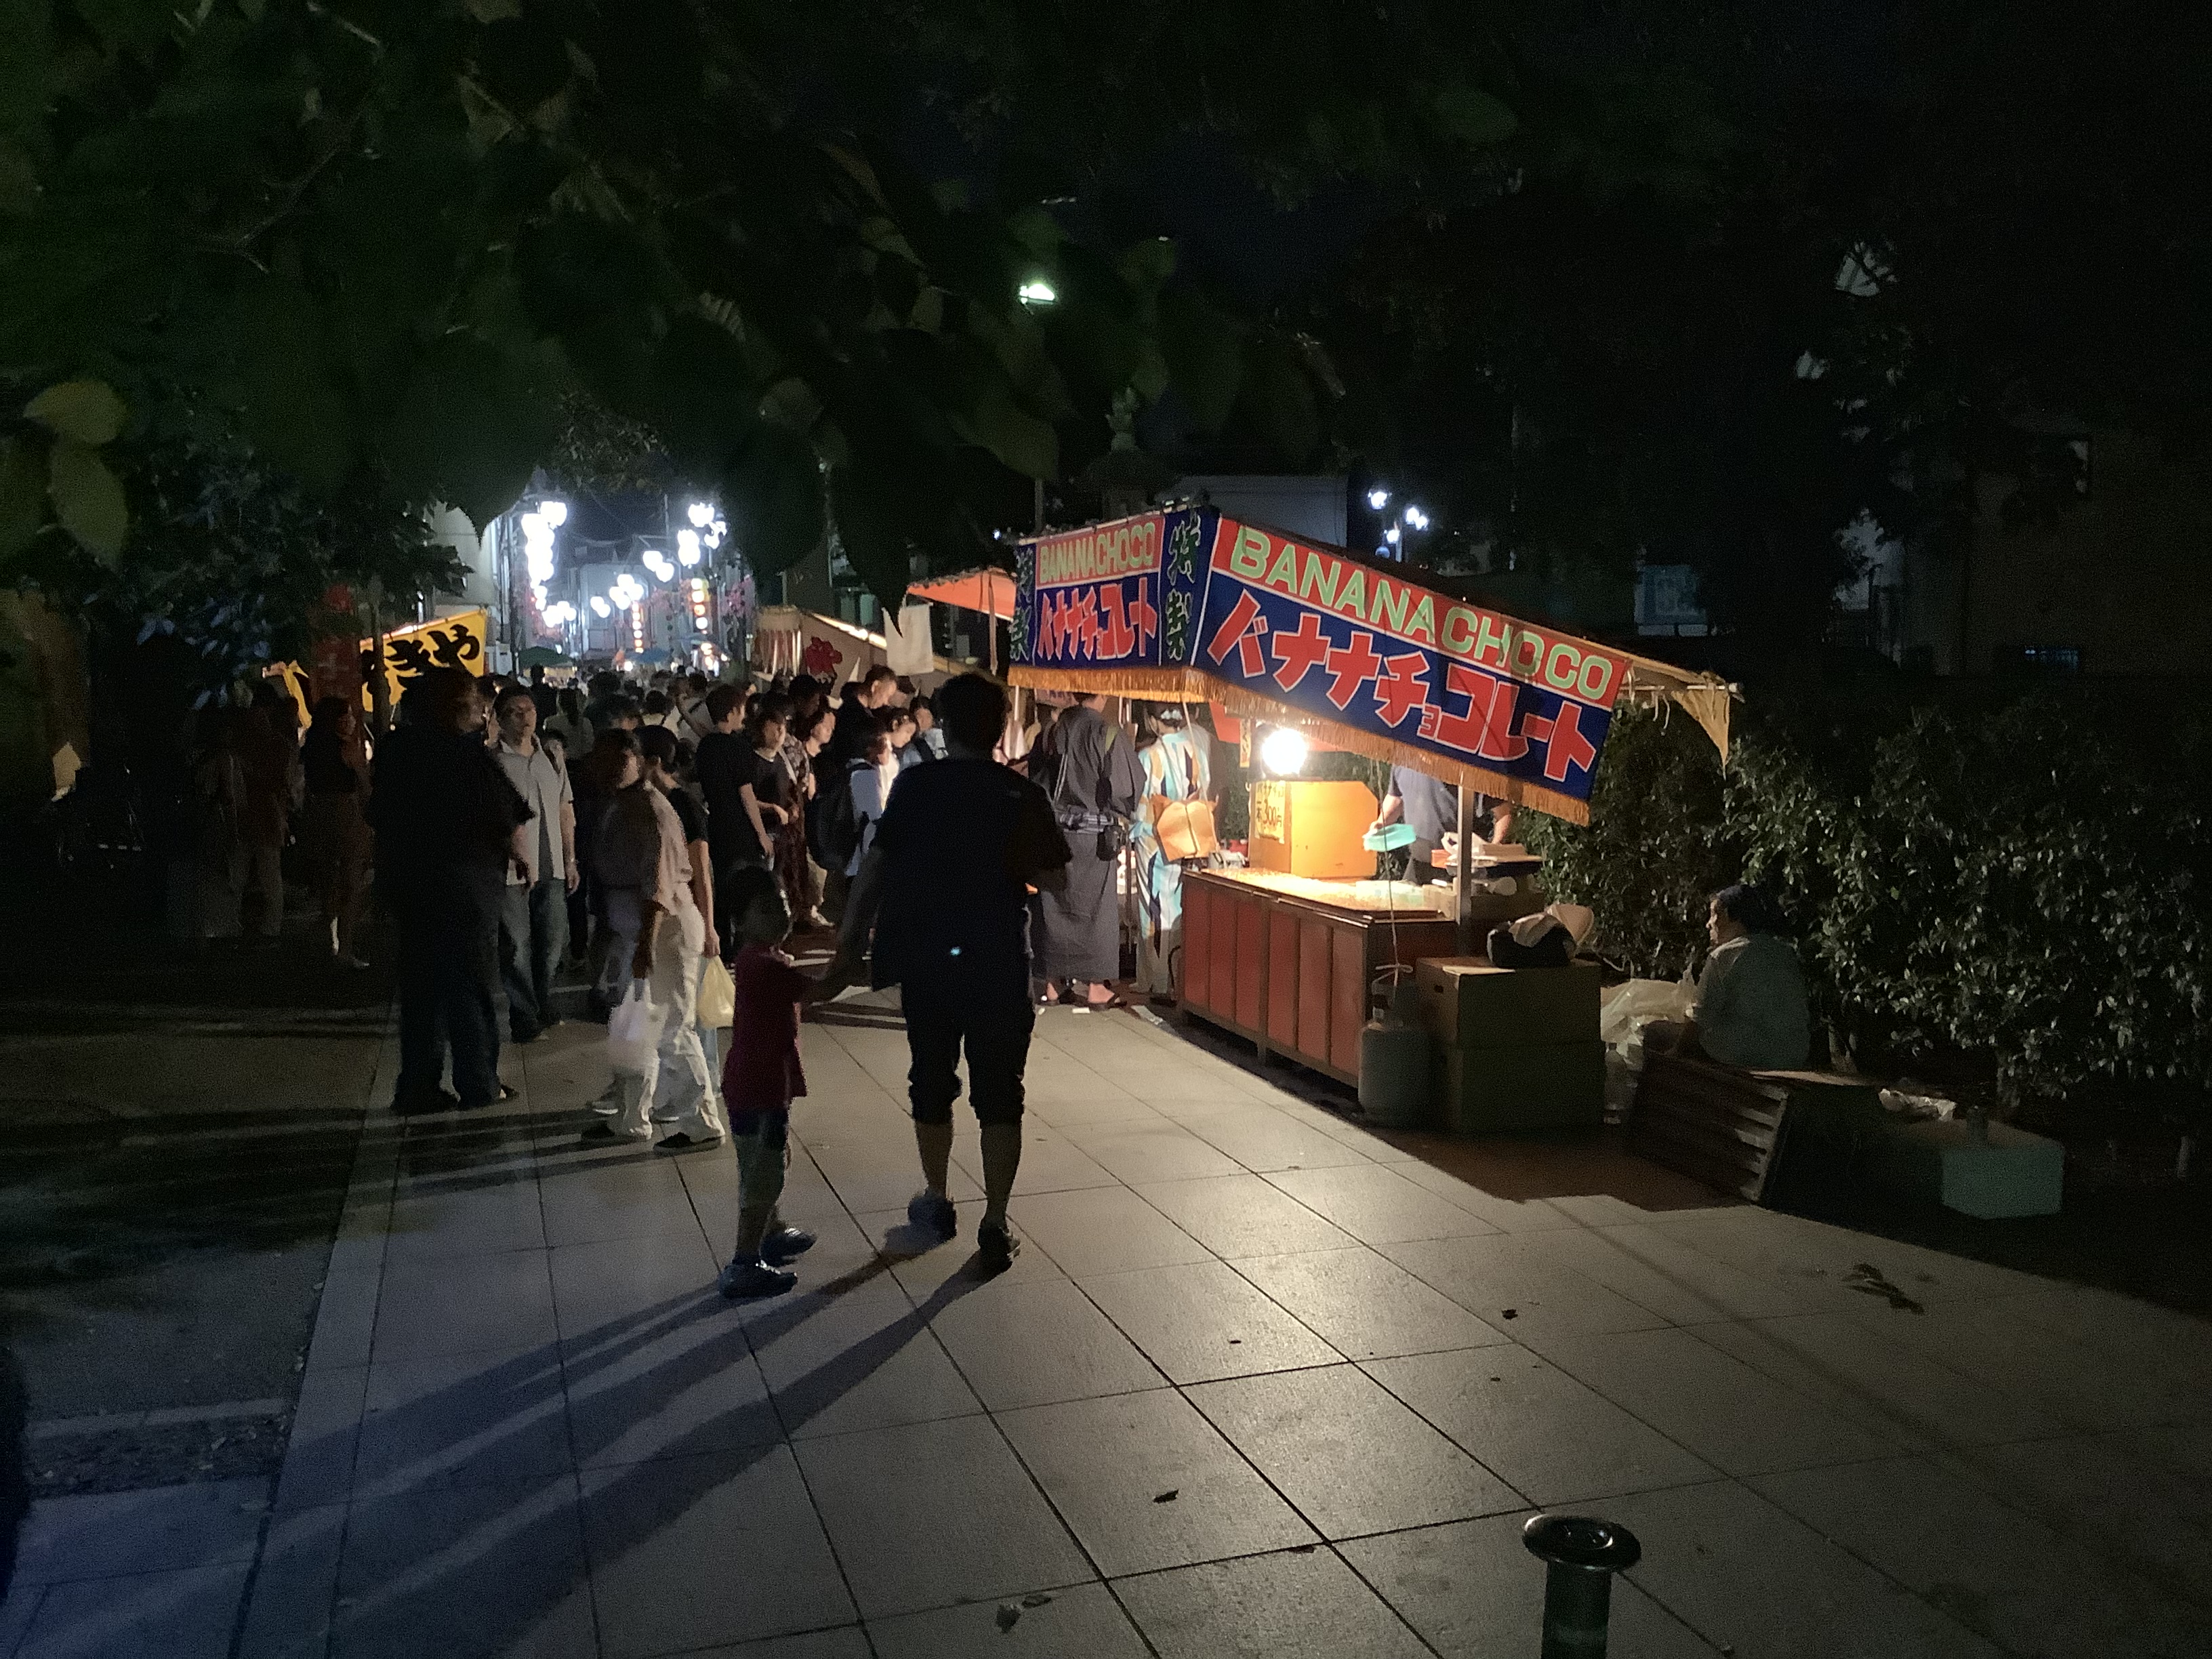 Yomise(night stalls) in front of Renkei-ji